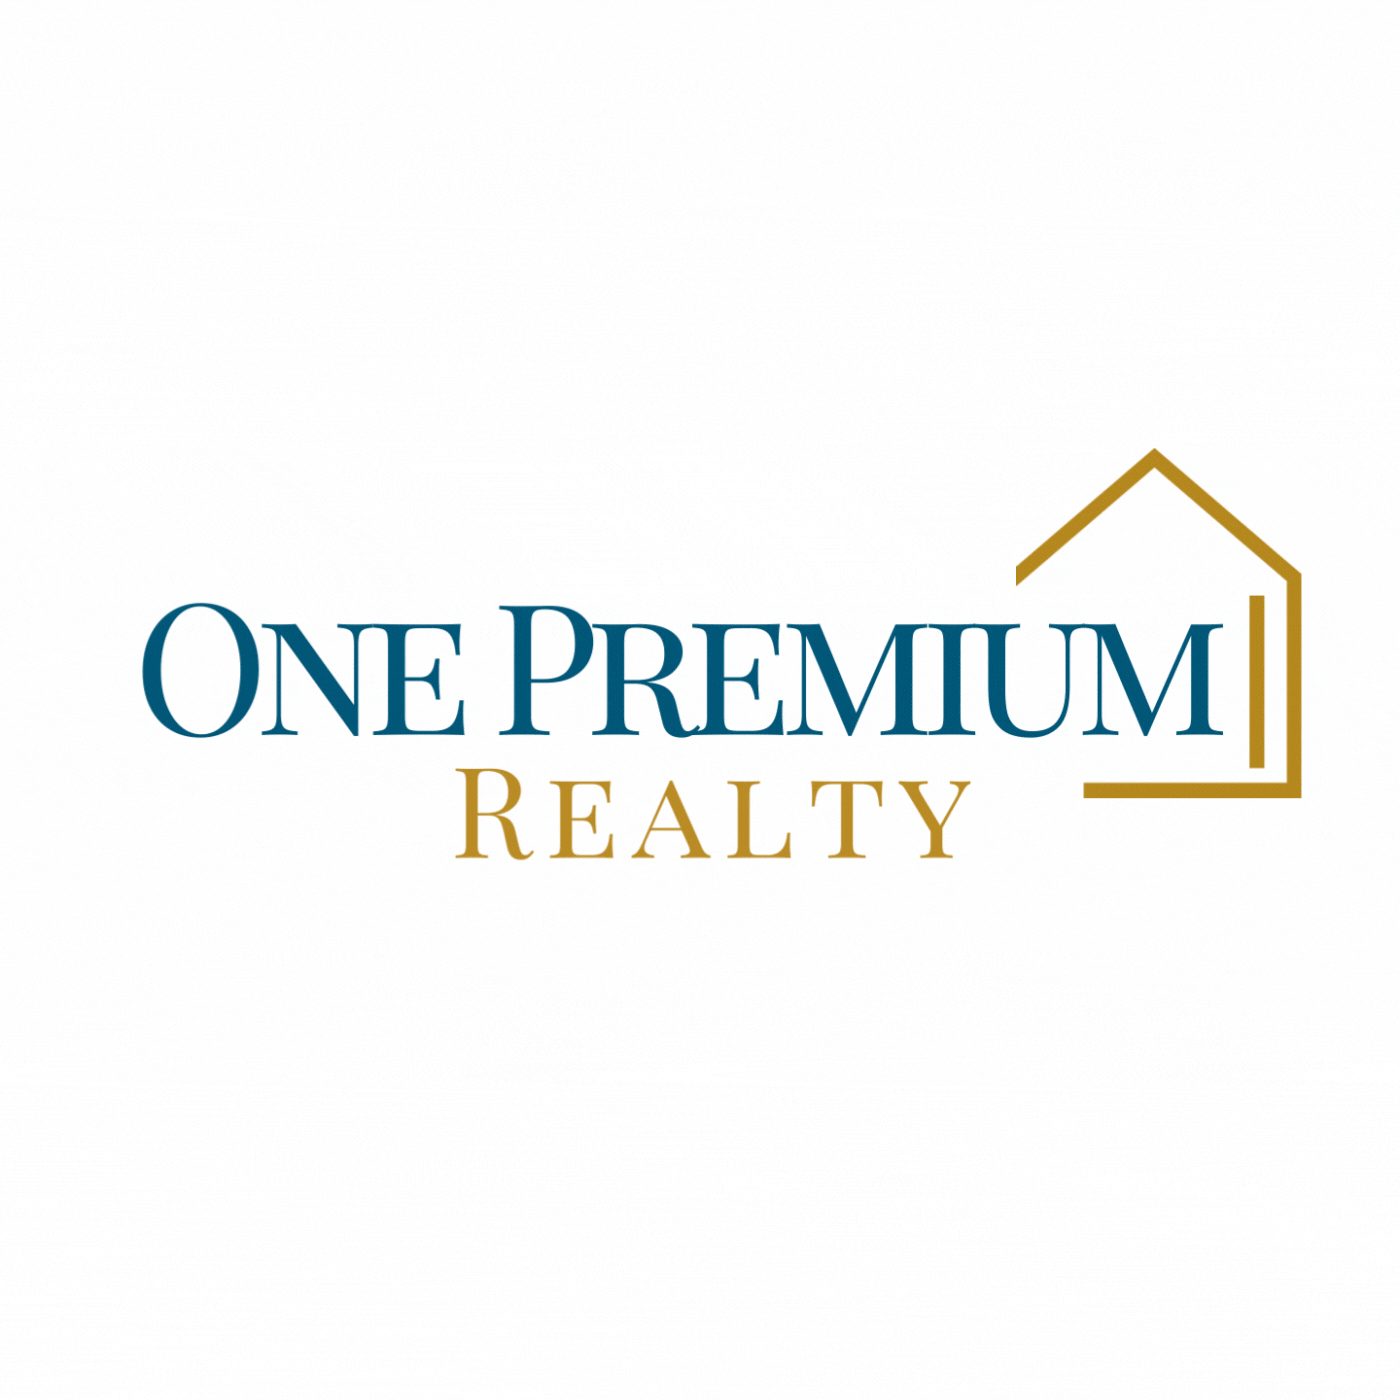 One Premium Realty